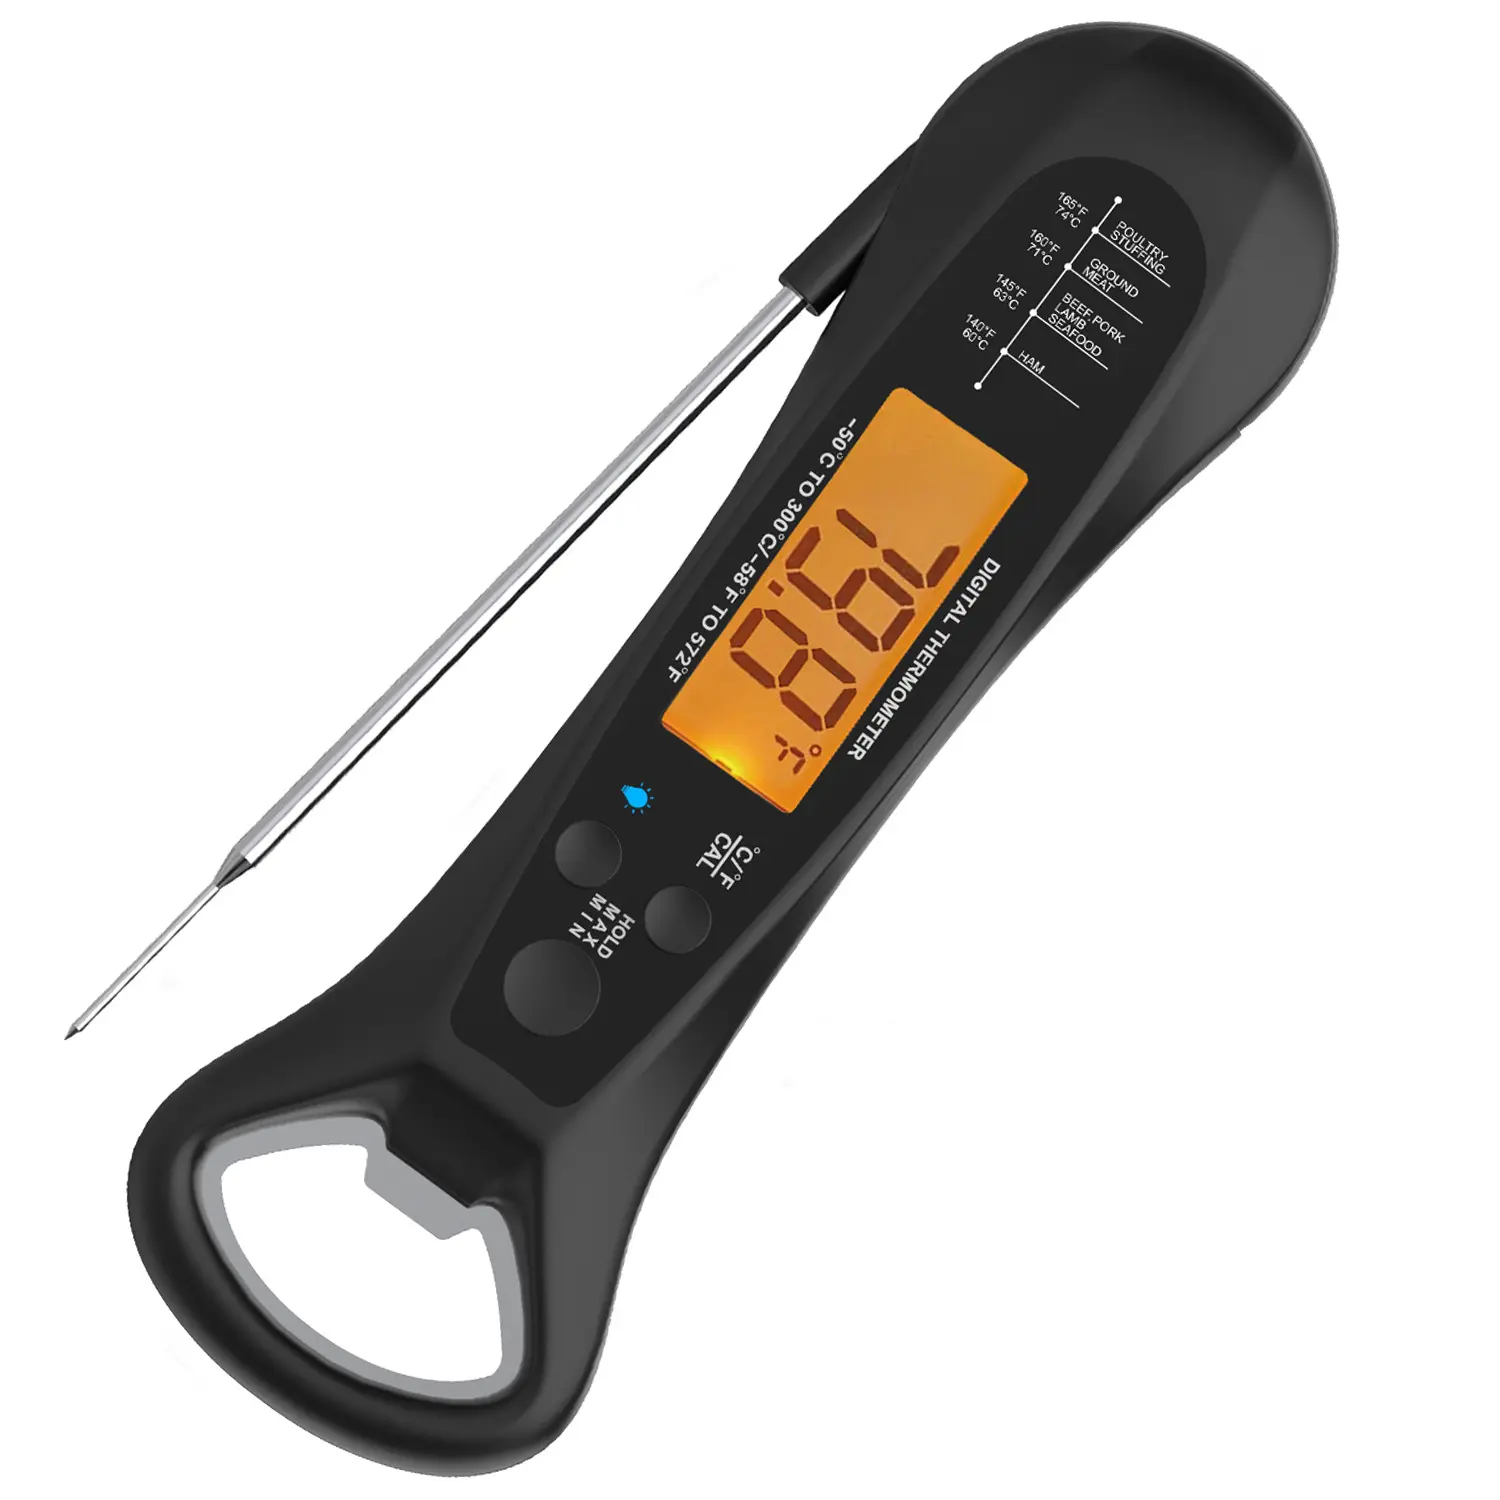 Fabrika mutfak pişirme termometresi büyük ekran dijital ekran hızlı sıcaklık ölçüm termometre tirbuşon ile